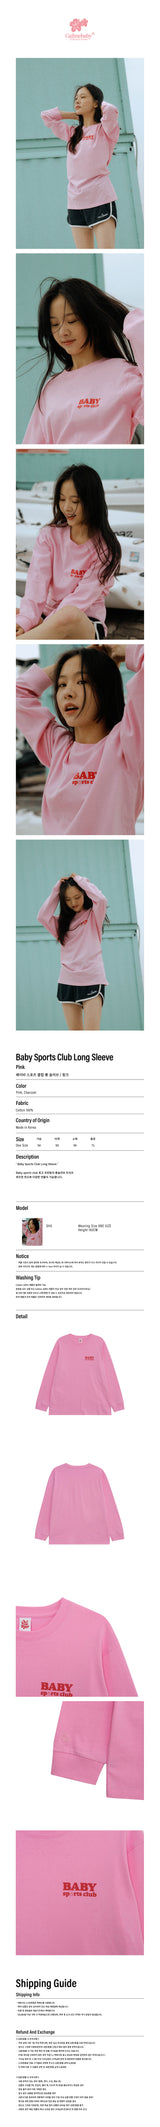 ベイビースポーツクラブロングスリーブ / Baby Sports Club Long Sleeve _ Pink